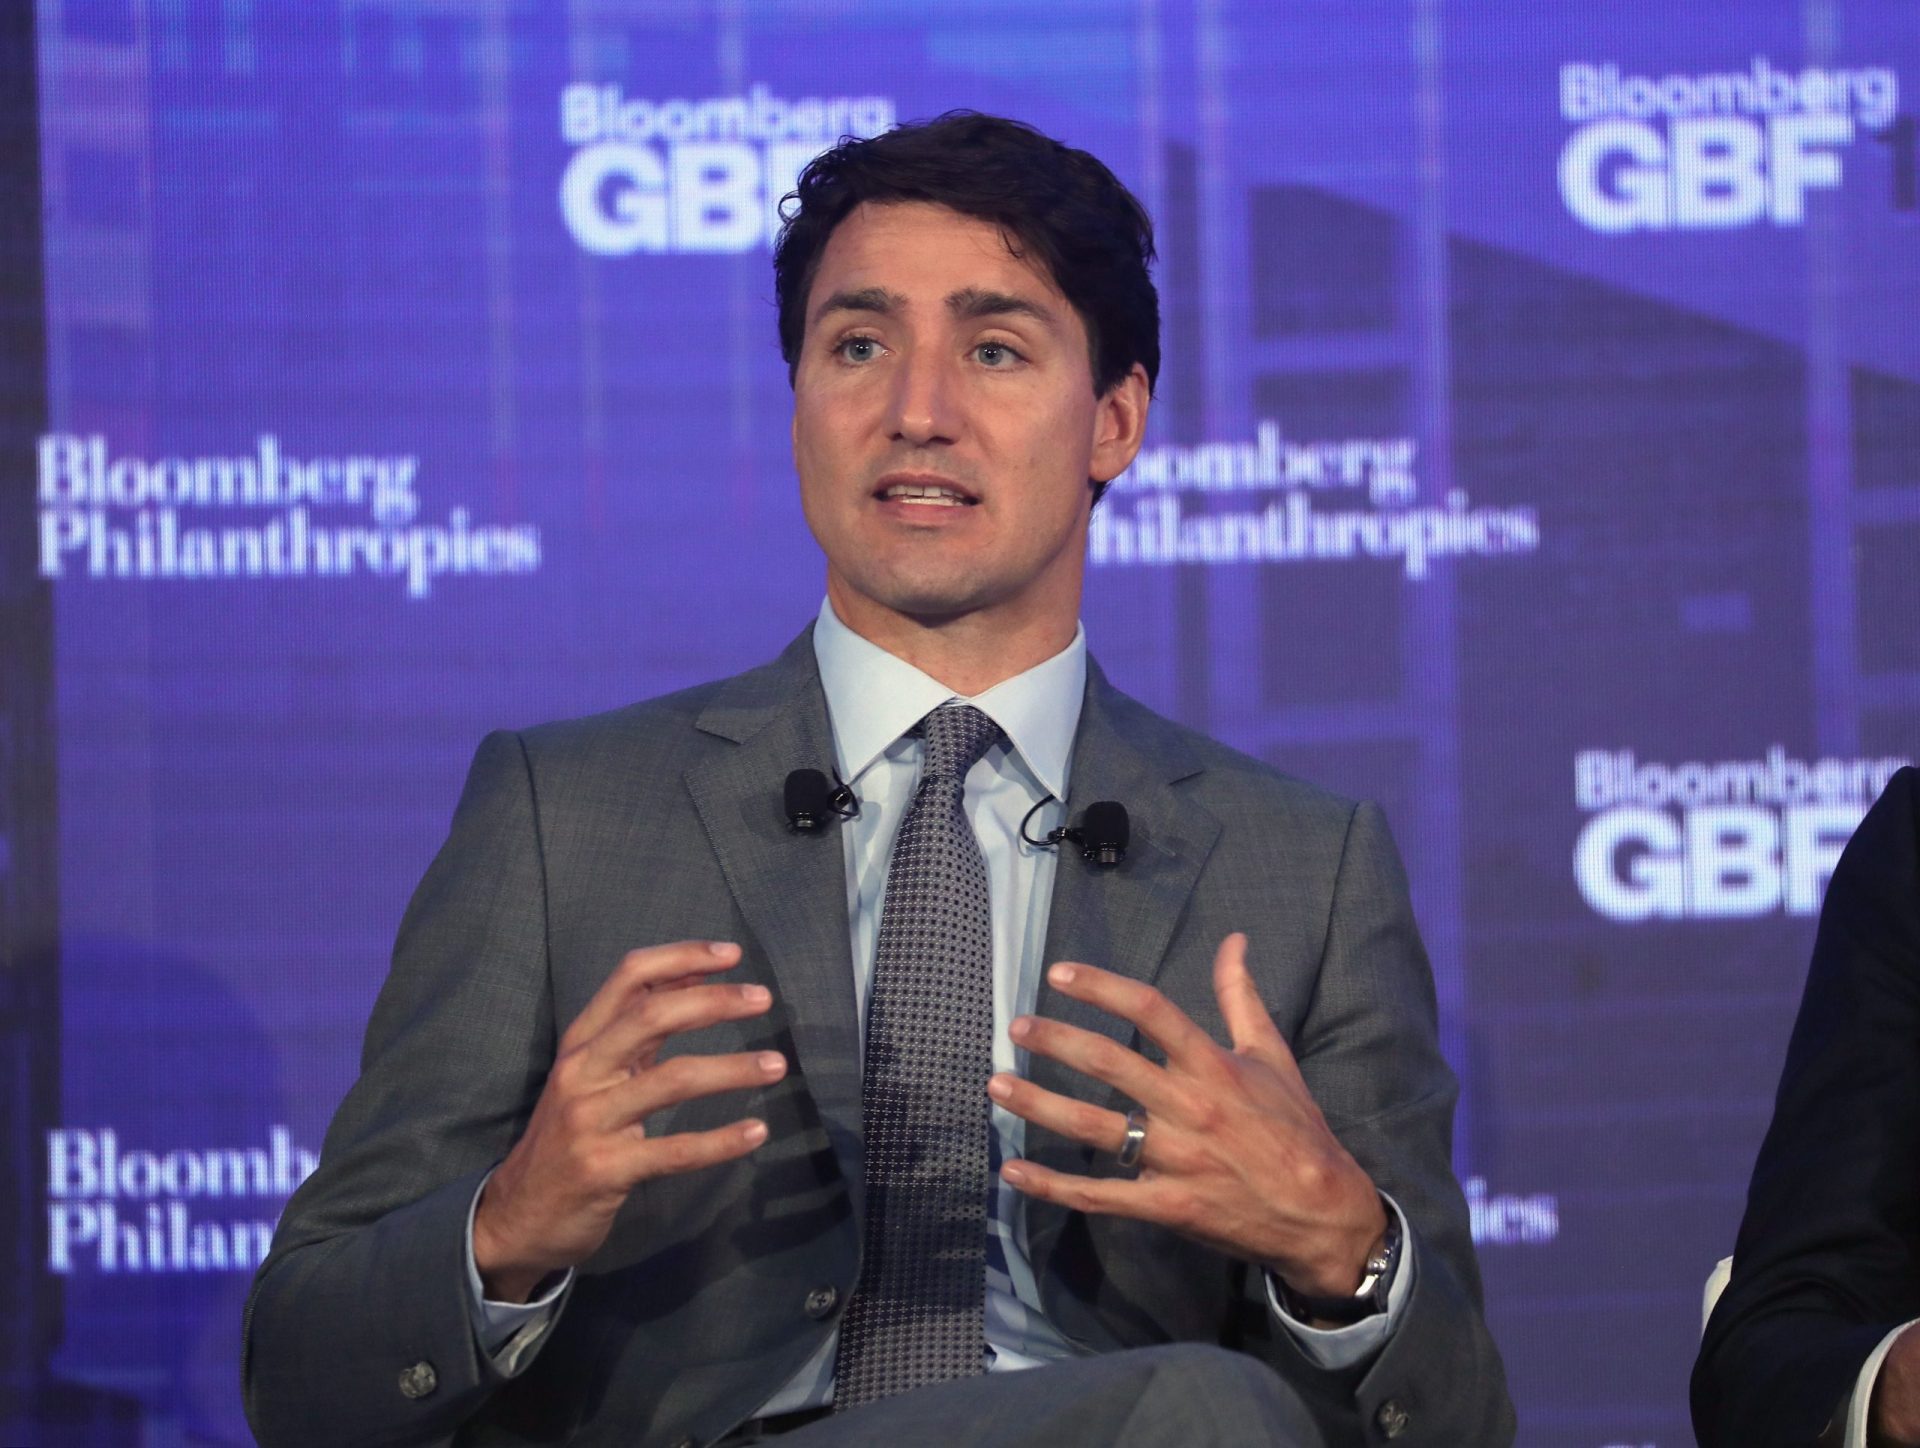 As meias do primeiro-ministro canadiano não passaram despercebidas em evento em Nova Iorque [FOTO]